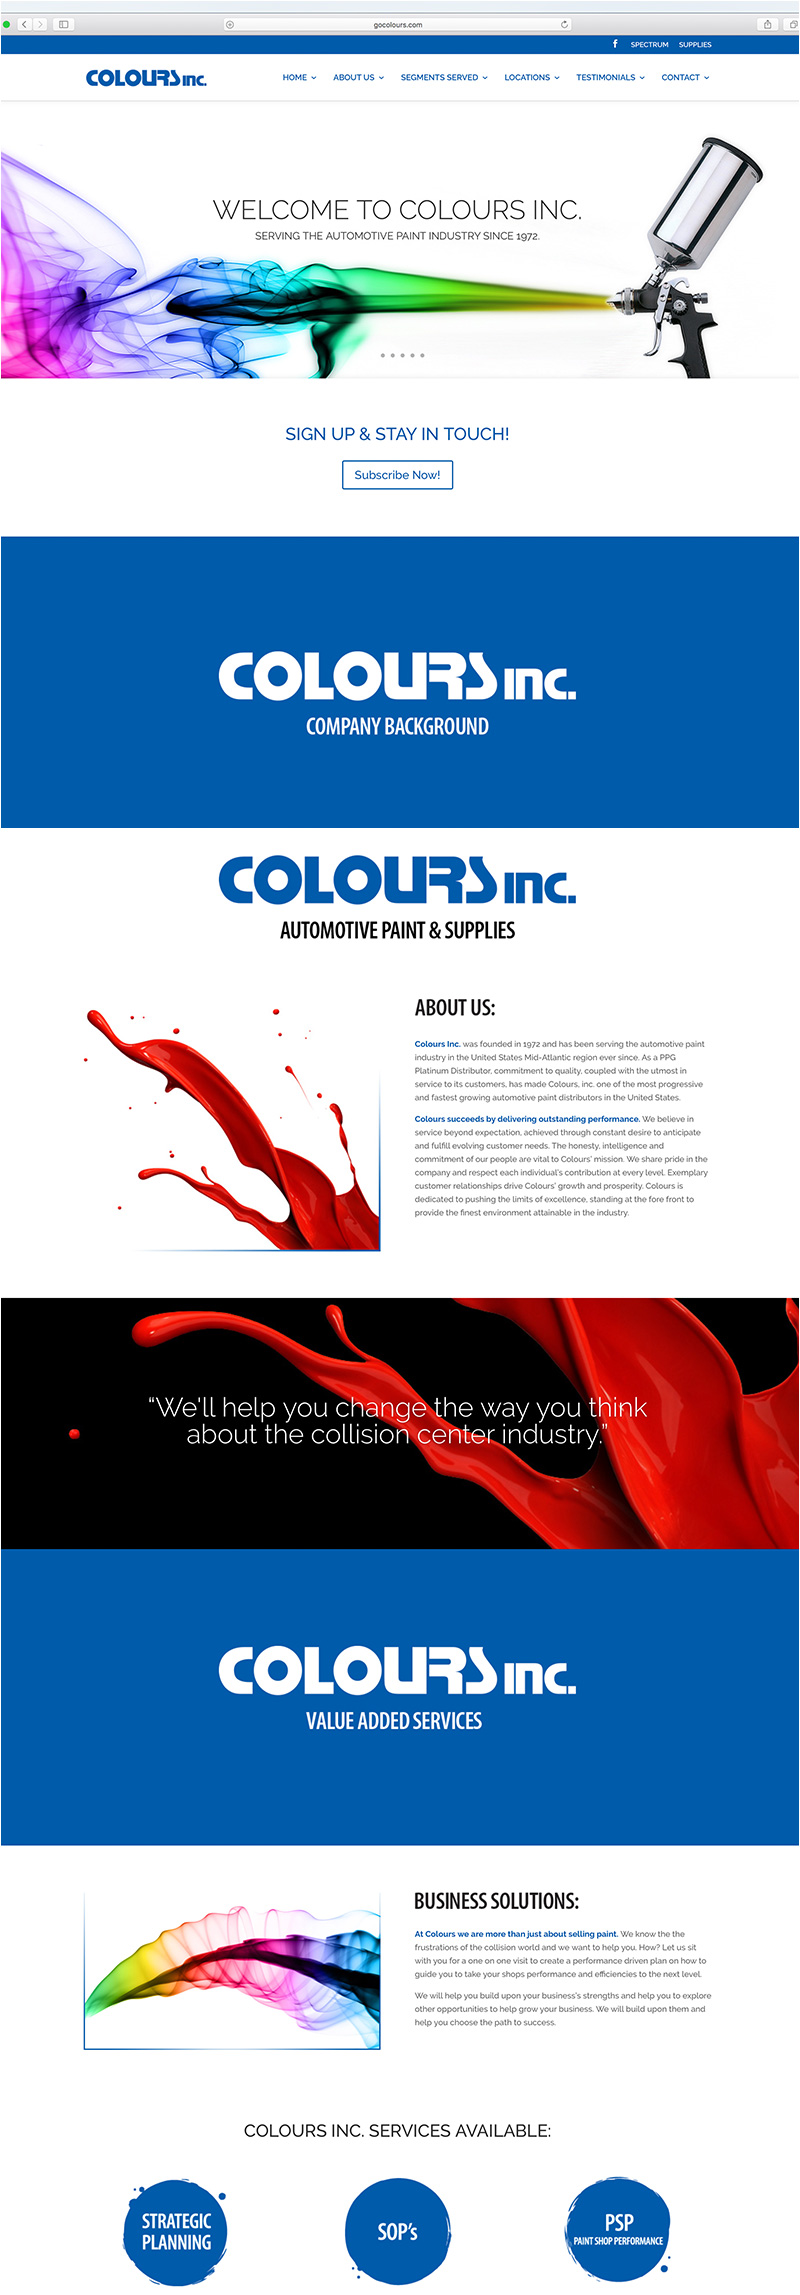 Colours, Inc. Automotive Paint & Supplies website